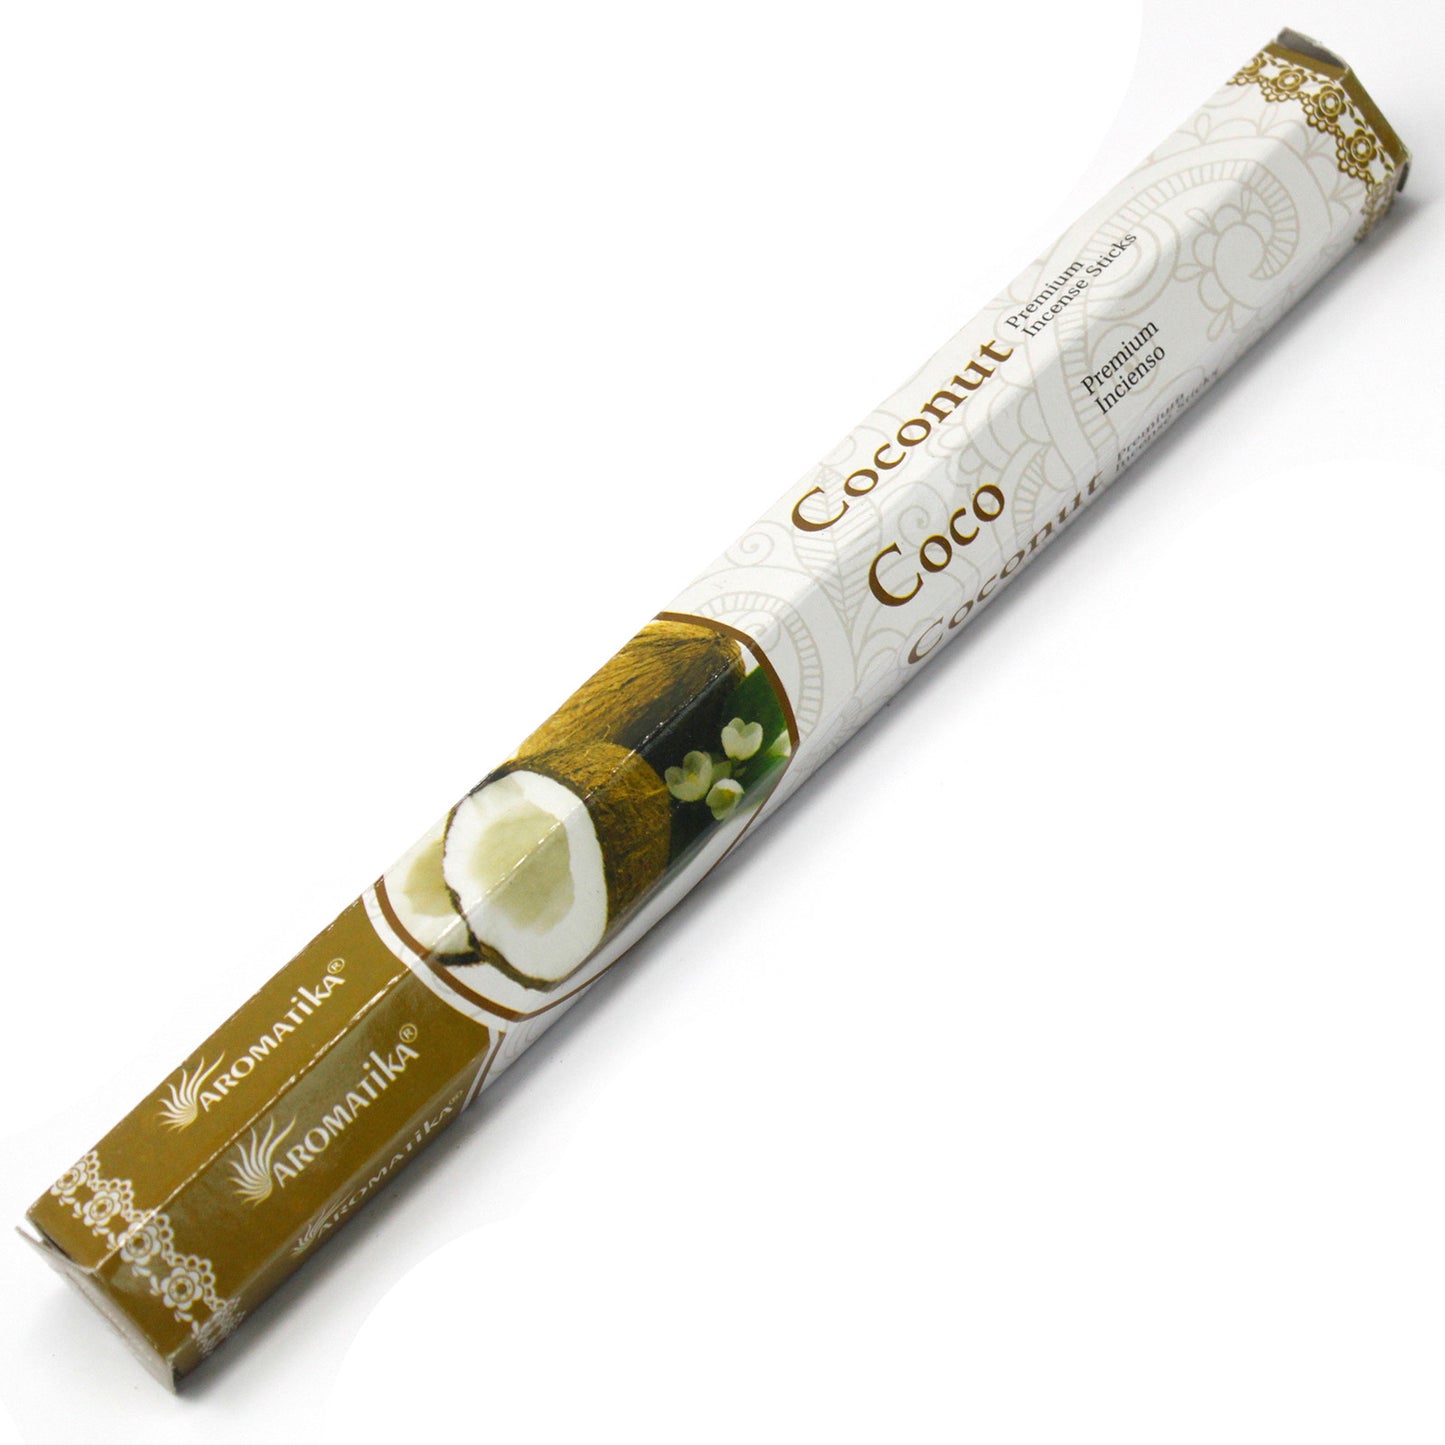 Aromatica Premium Incense - Coconut